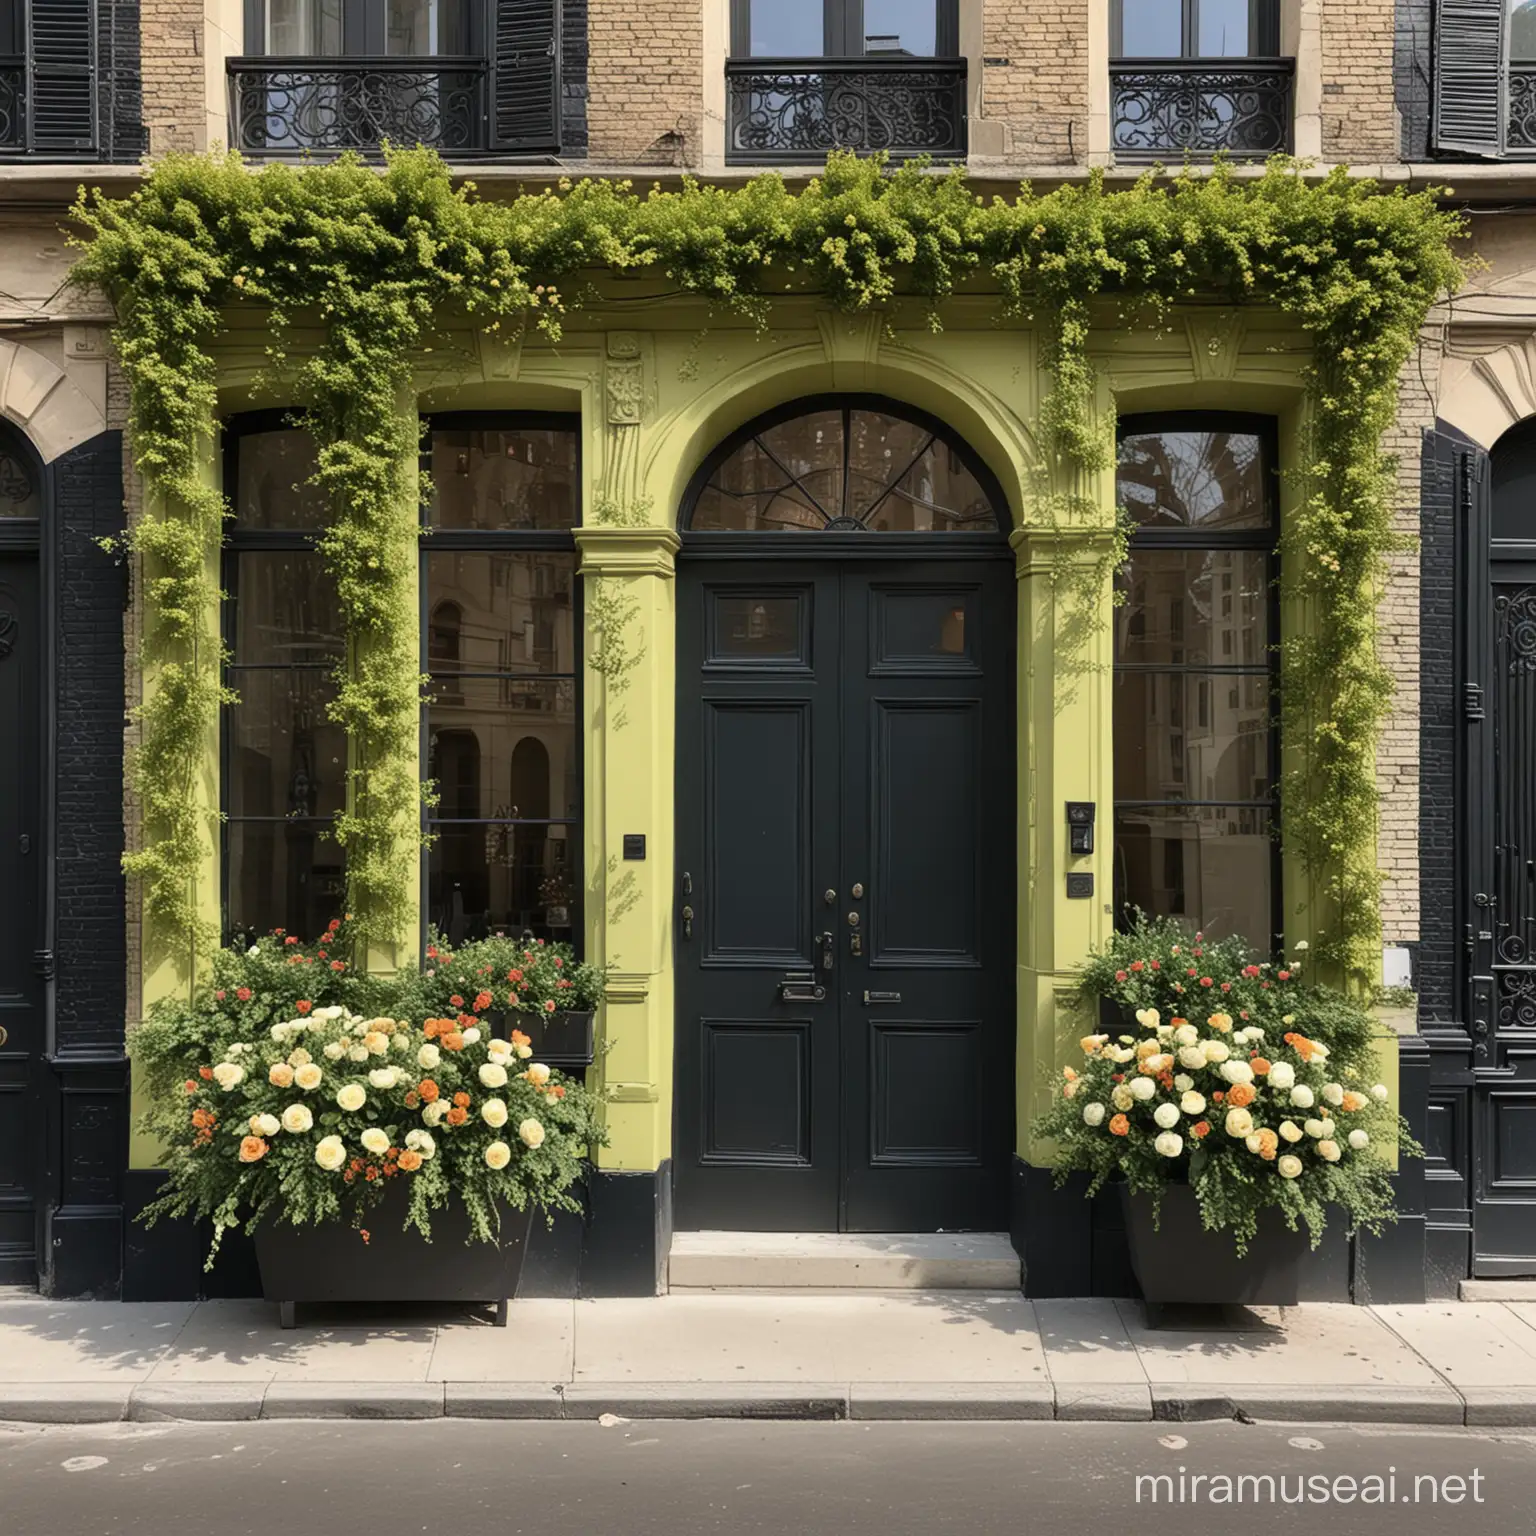 Give me a 6,000 sqft commercial building that has the following design details: Parisian architecture, citron green door, chalk black brick building, floral landscape
 